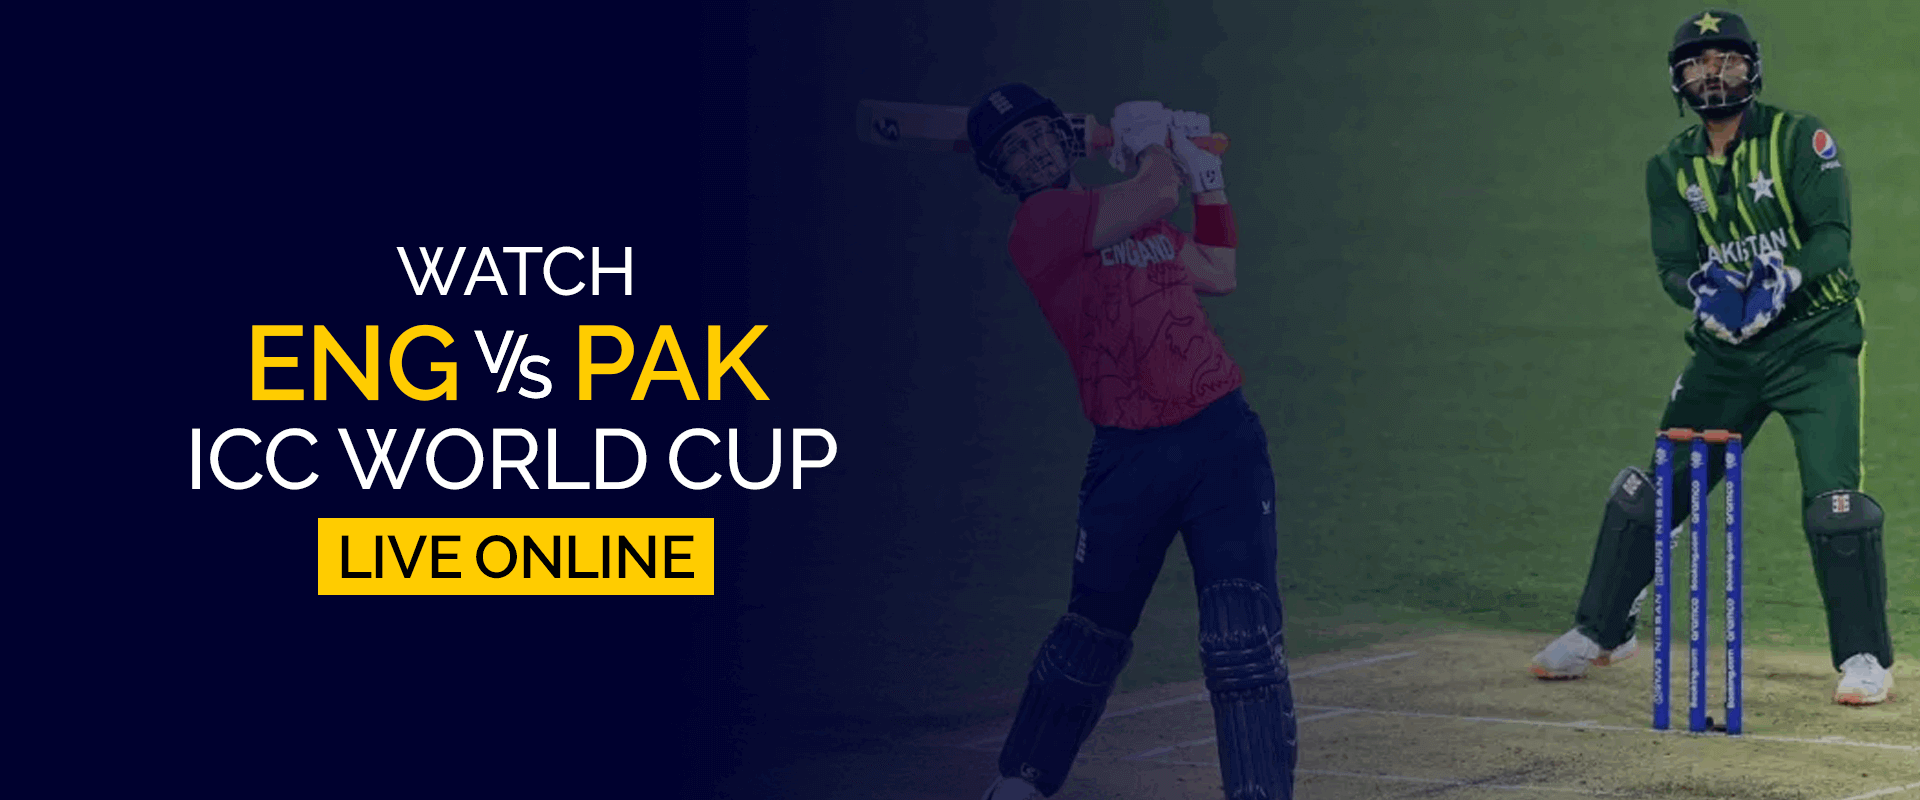 Guarda la Coppa del mondo ICC Inghilterra vs Pakistan in diretta online